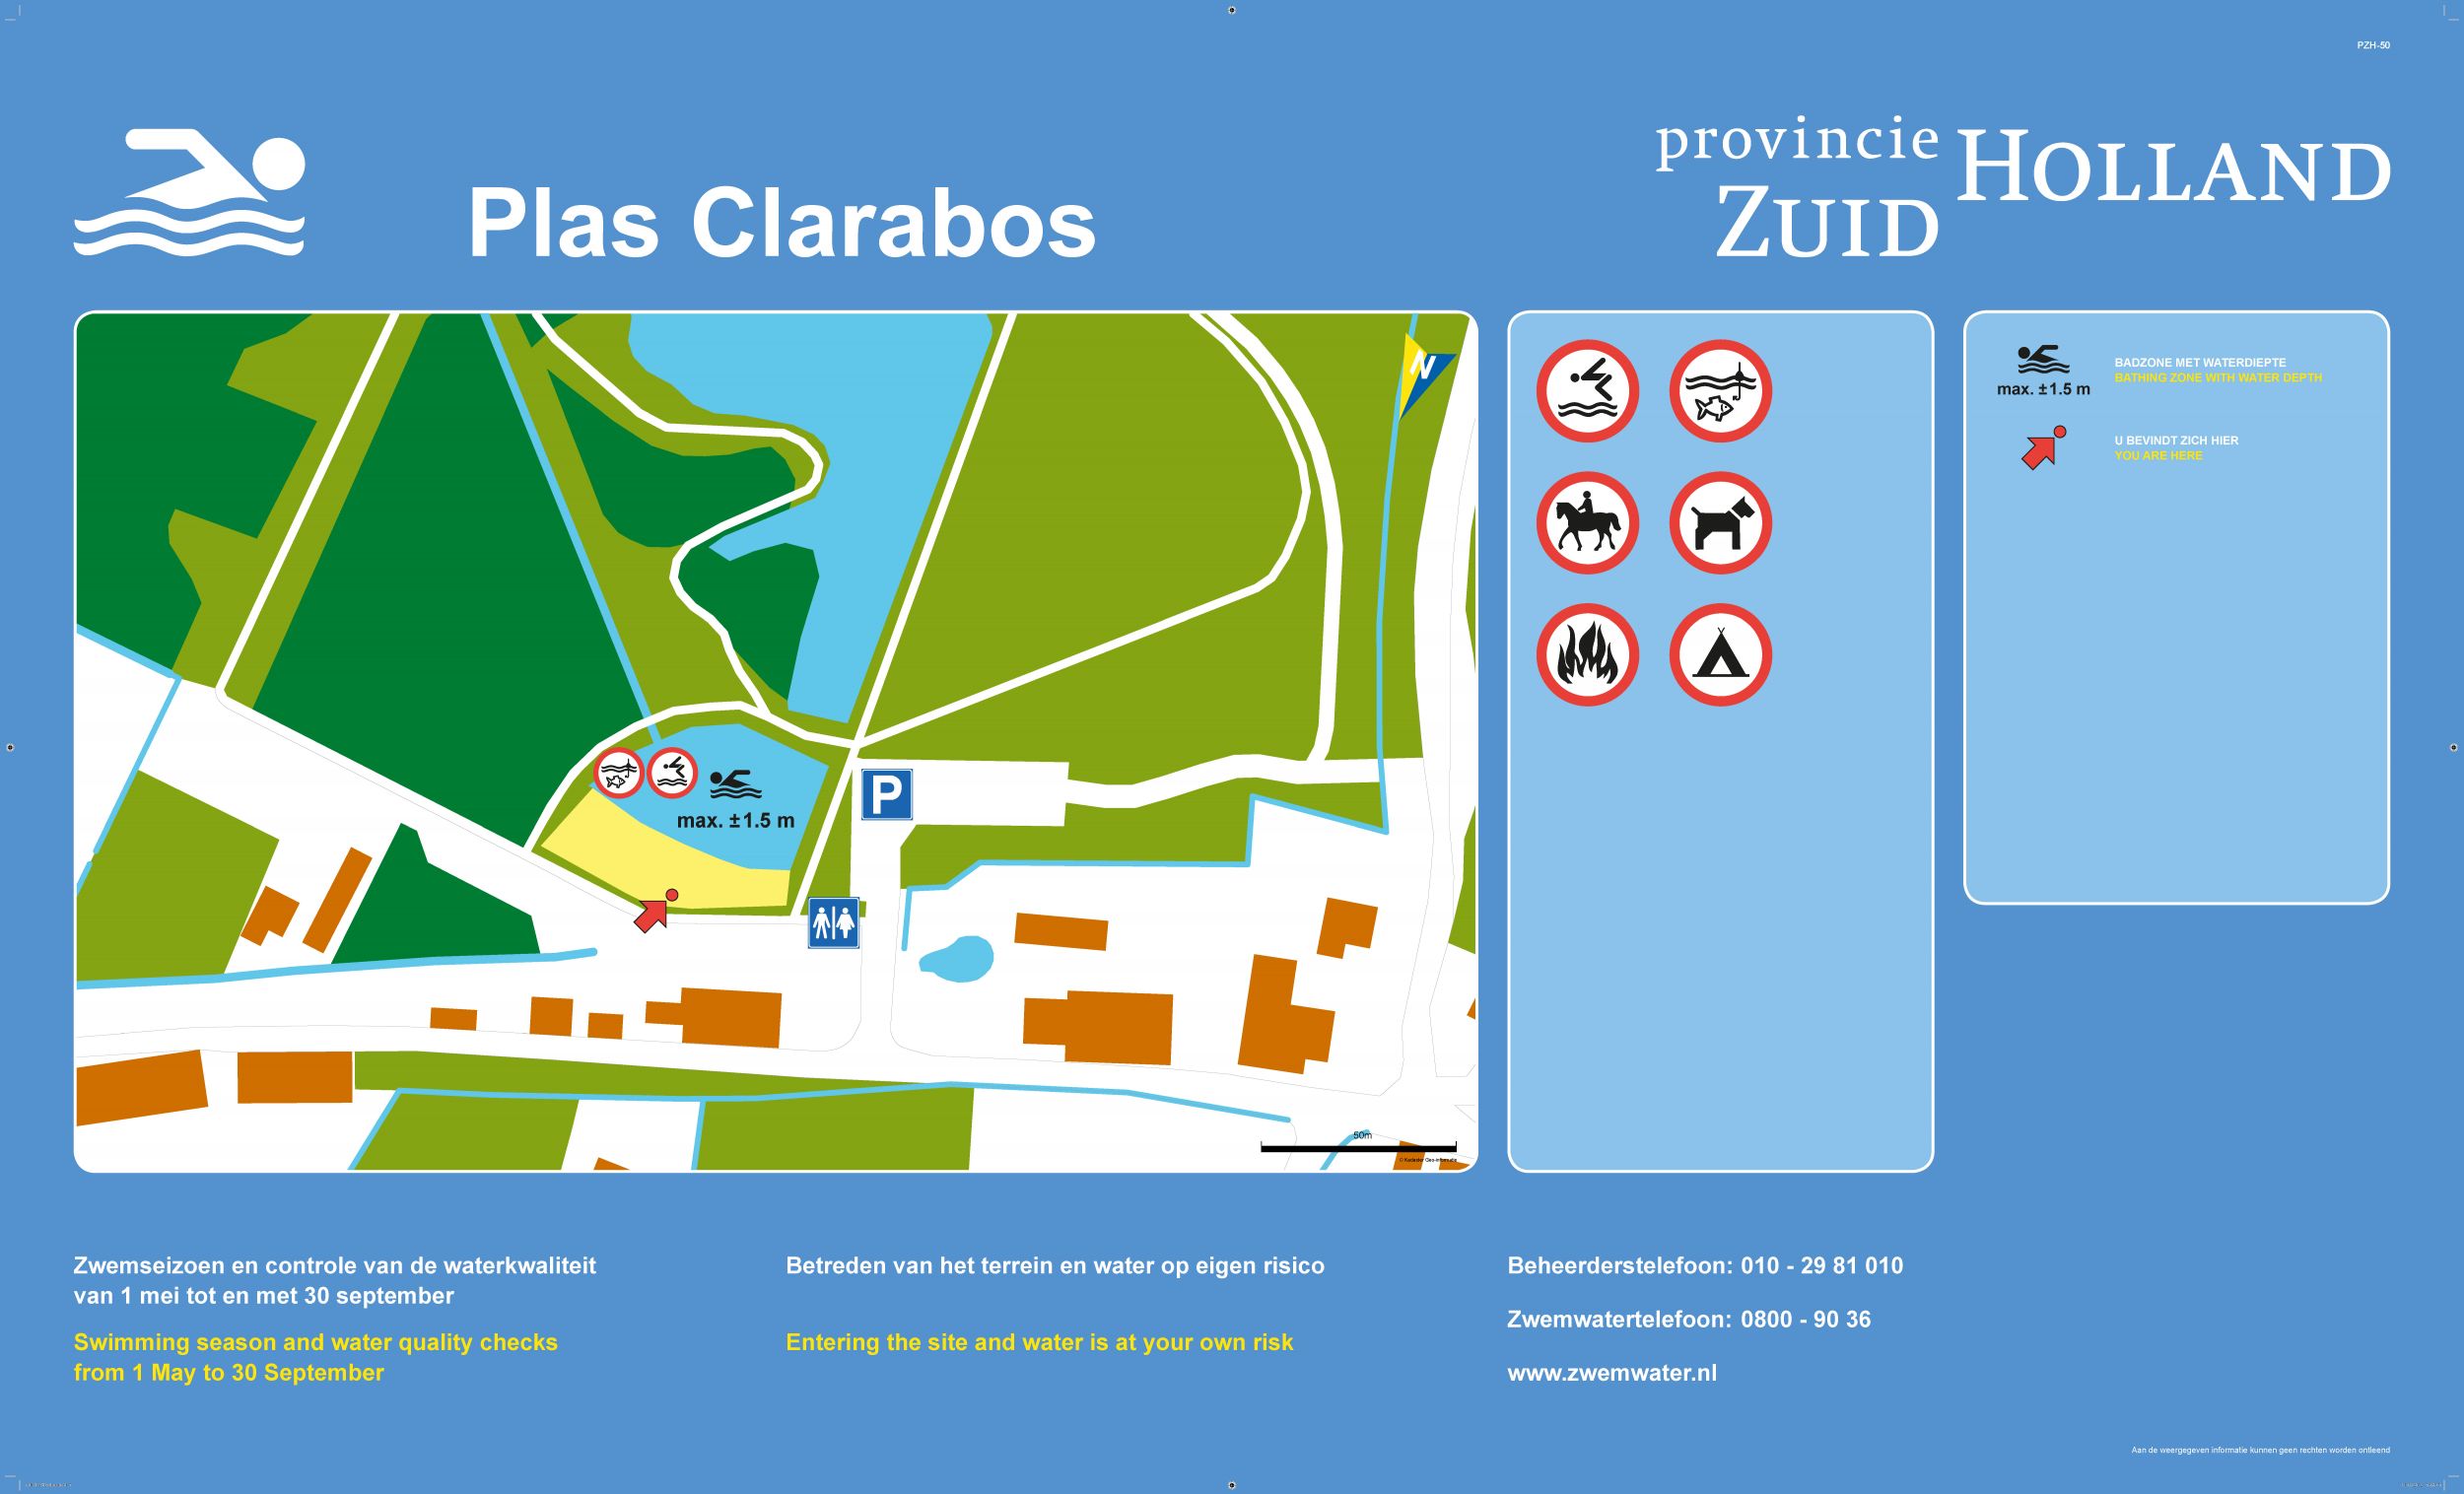 Het informatiebord bij zwemlocatie Plas Clarabos